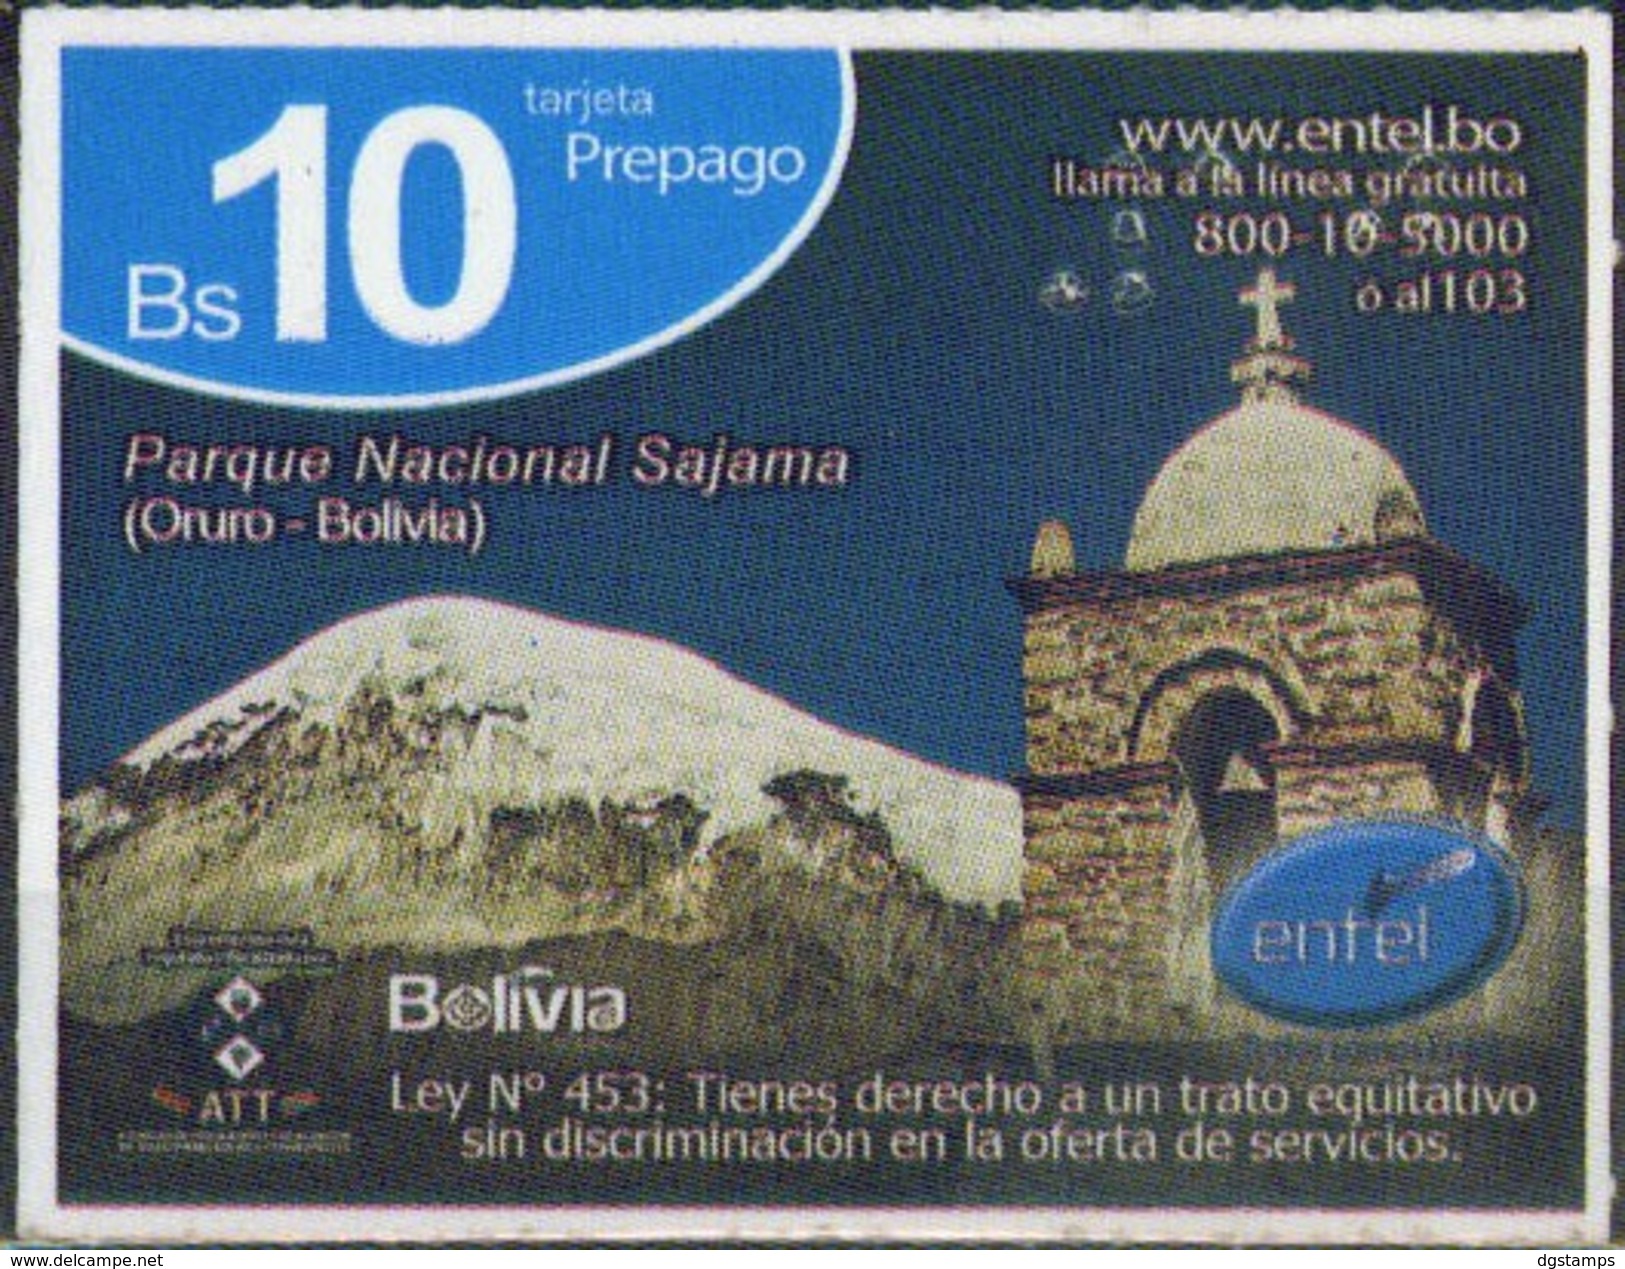 Bolivia 2017- 25-07-2018 Prepago ENTEL. Parque Nacional Sajama. Oruro. - Bolivië